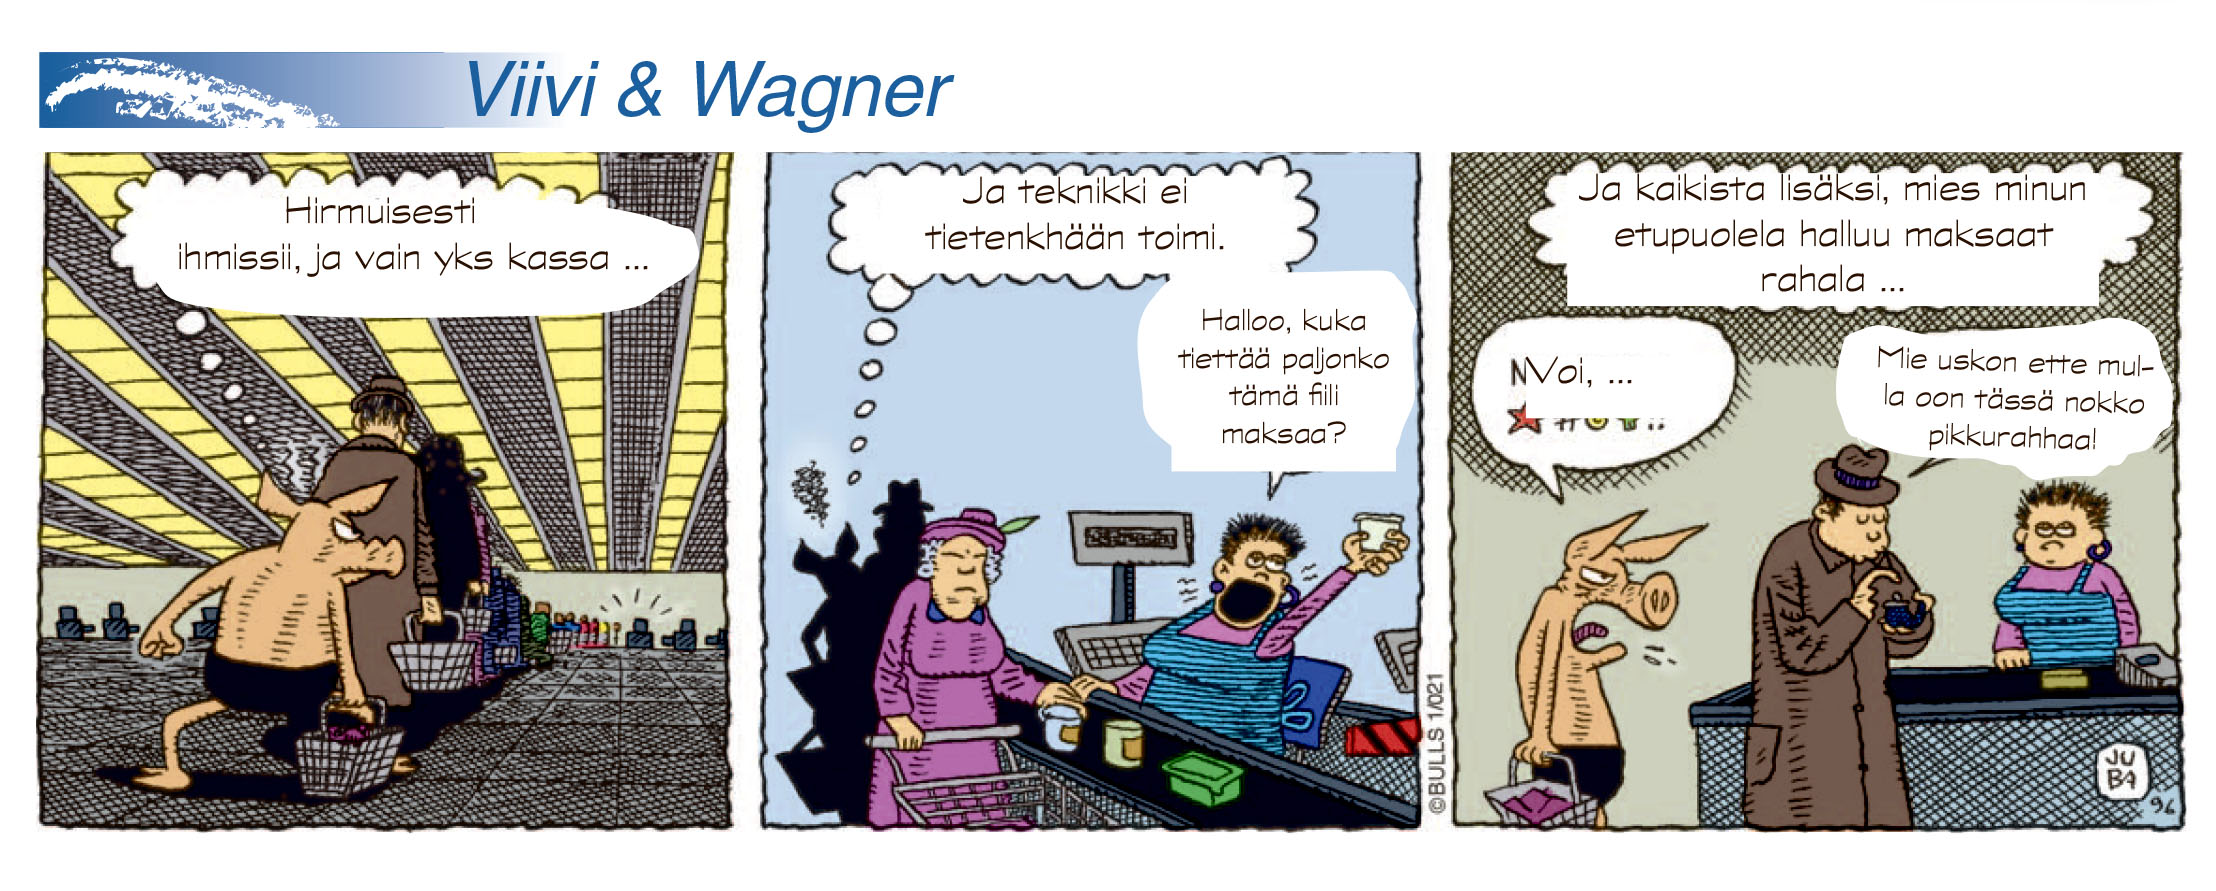 Viivi & Wagner (nr 10 -2013)